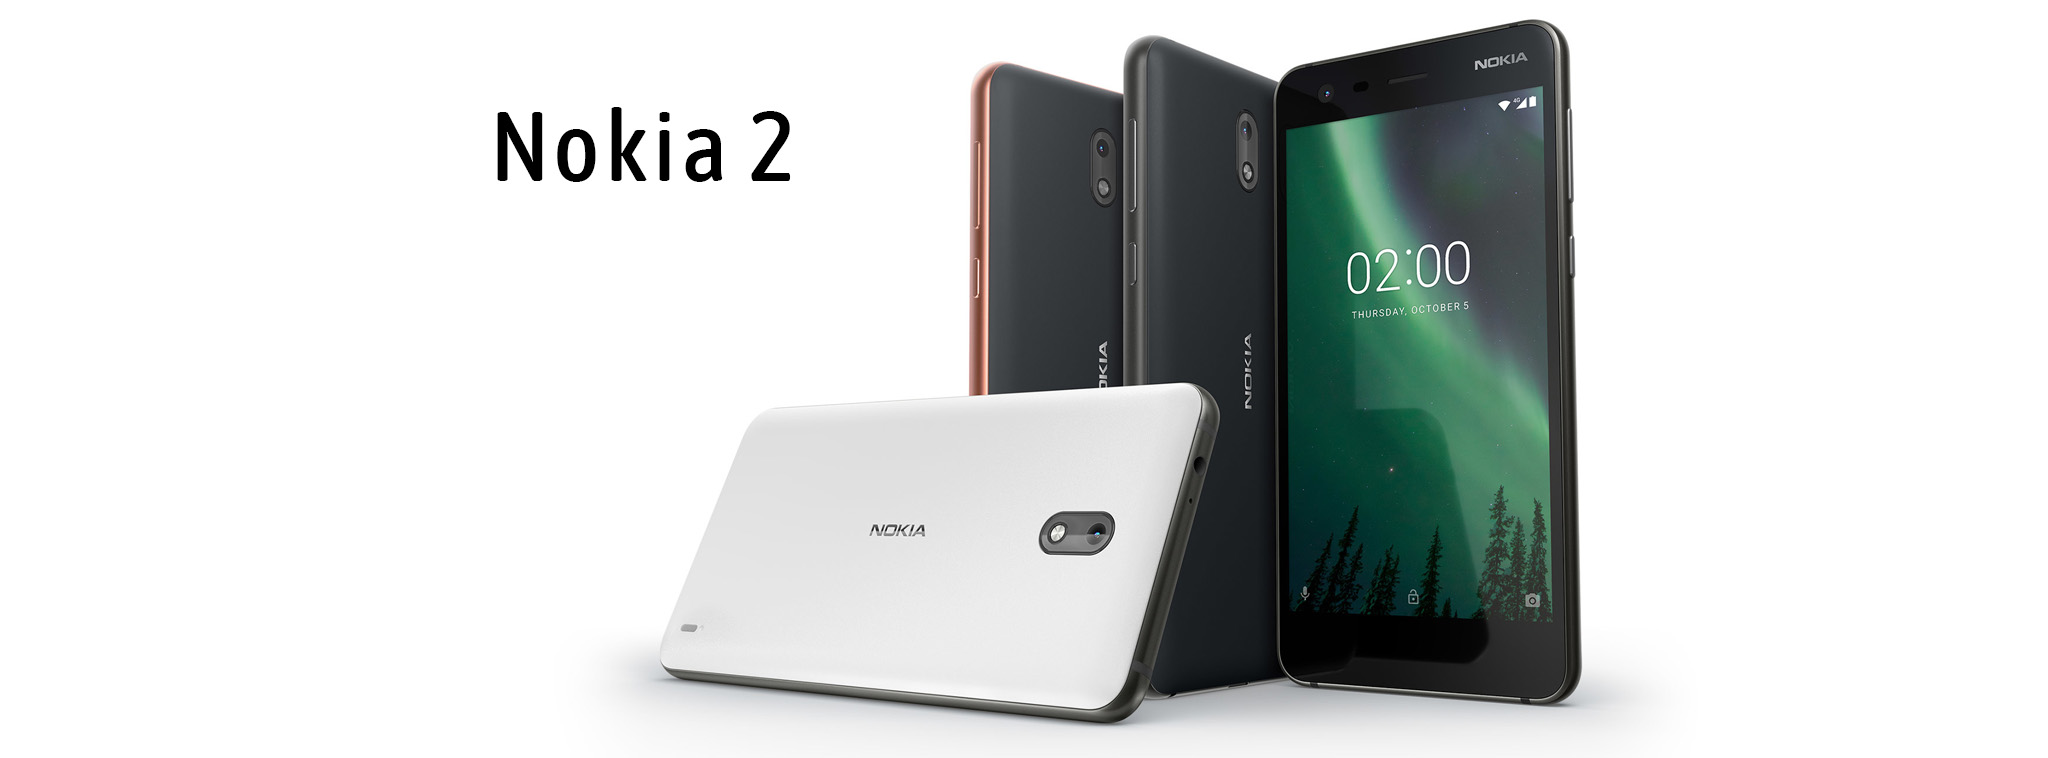 Nokia 2 chính thức: Pin 4.100 mAh, giá chỉ 99 Euro, smartphone rẻ nhất của HMD Global